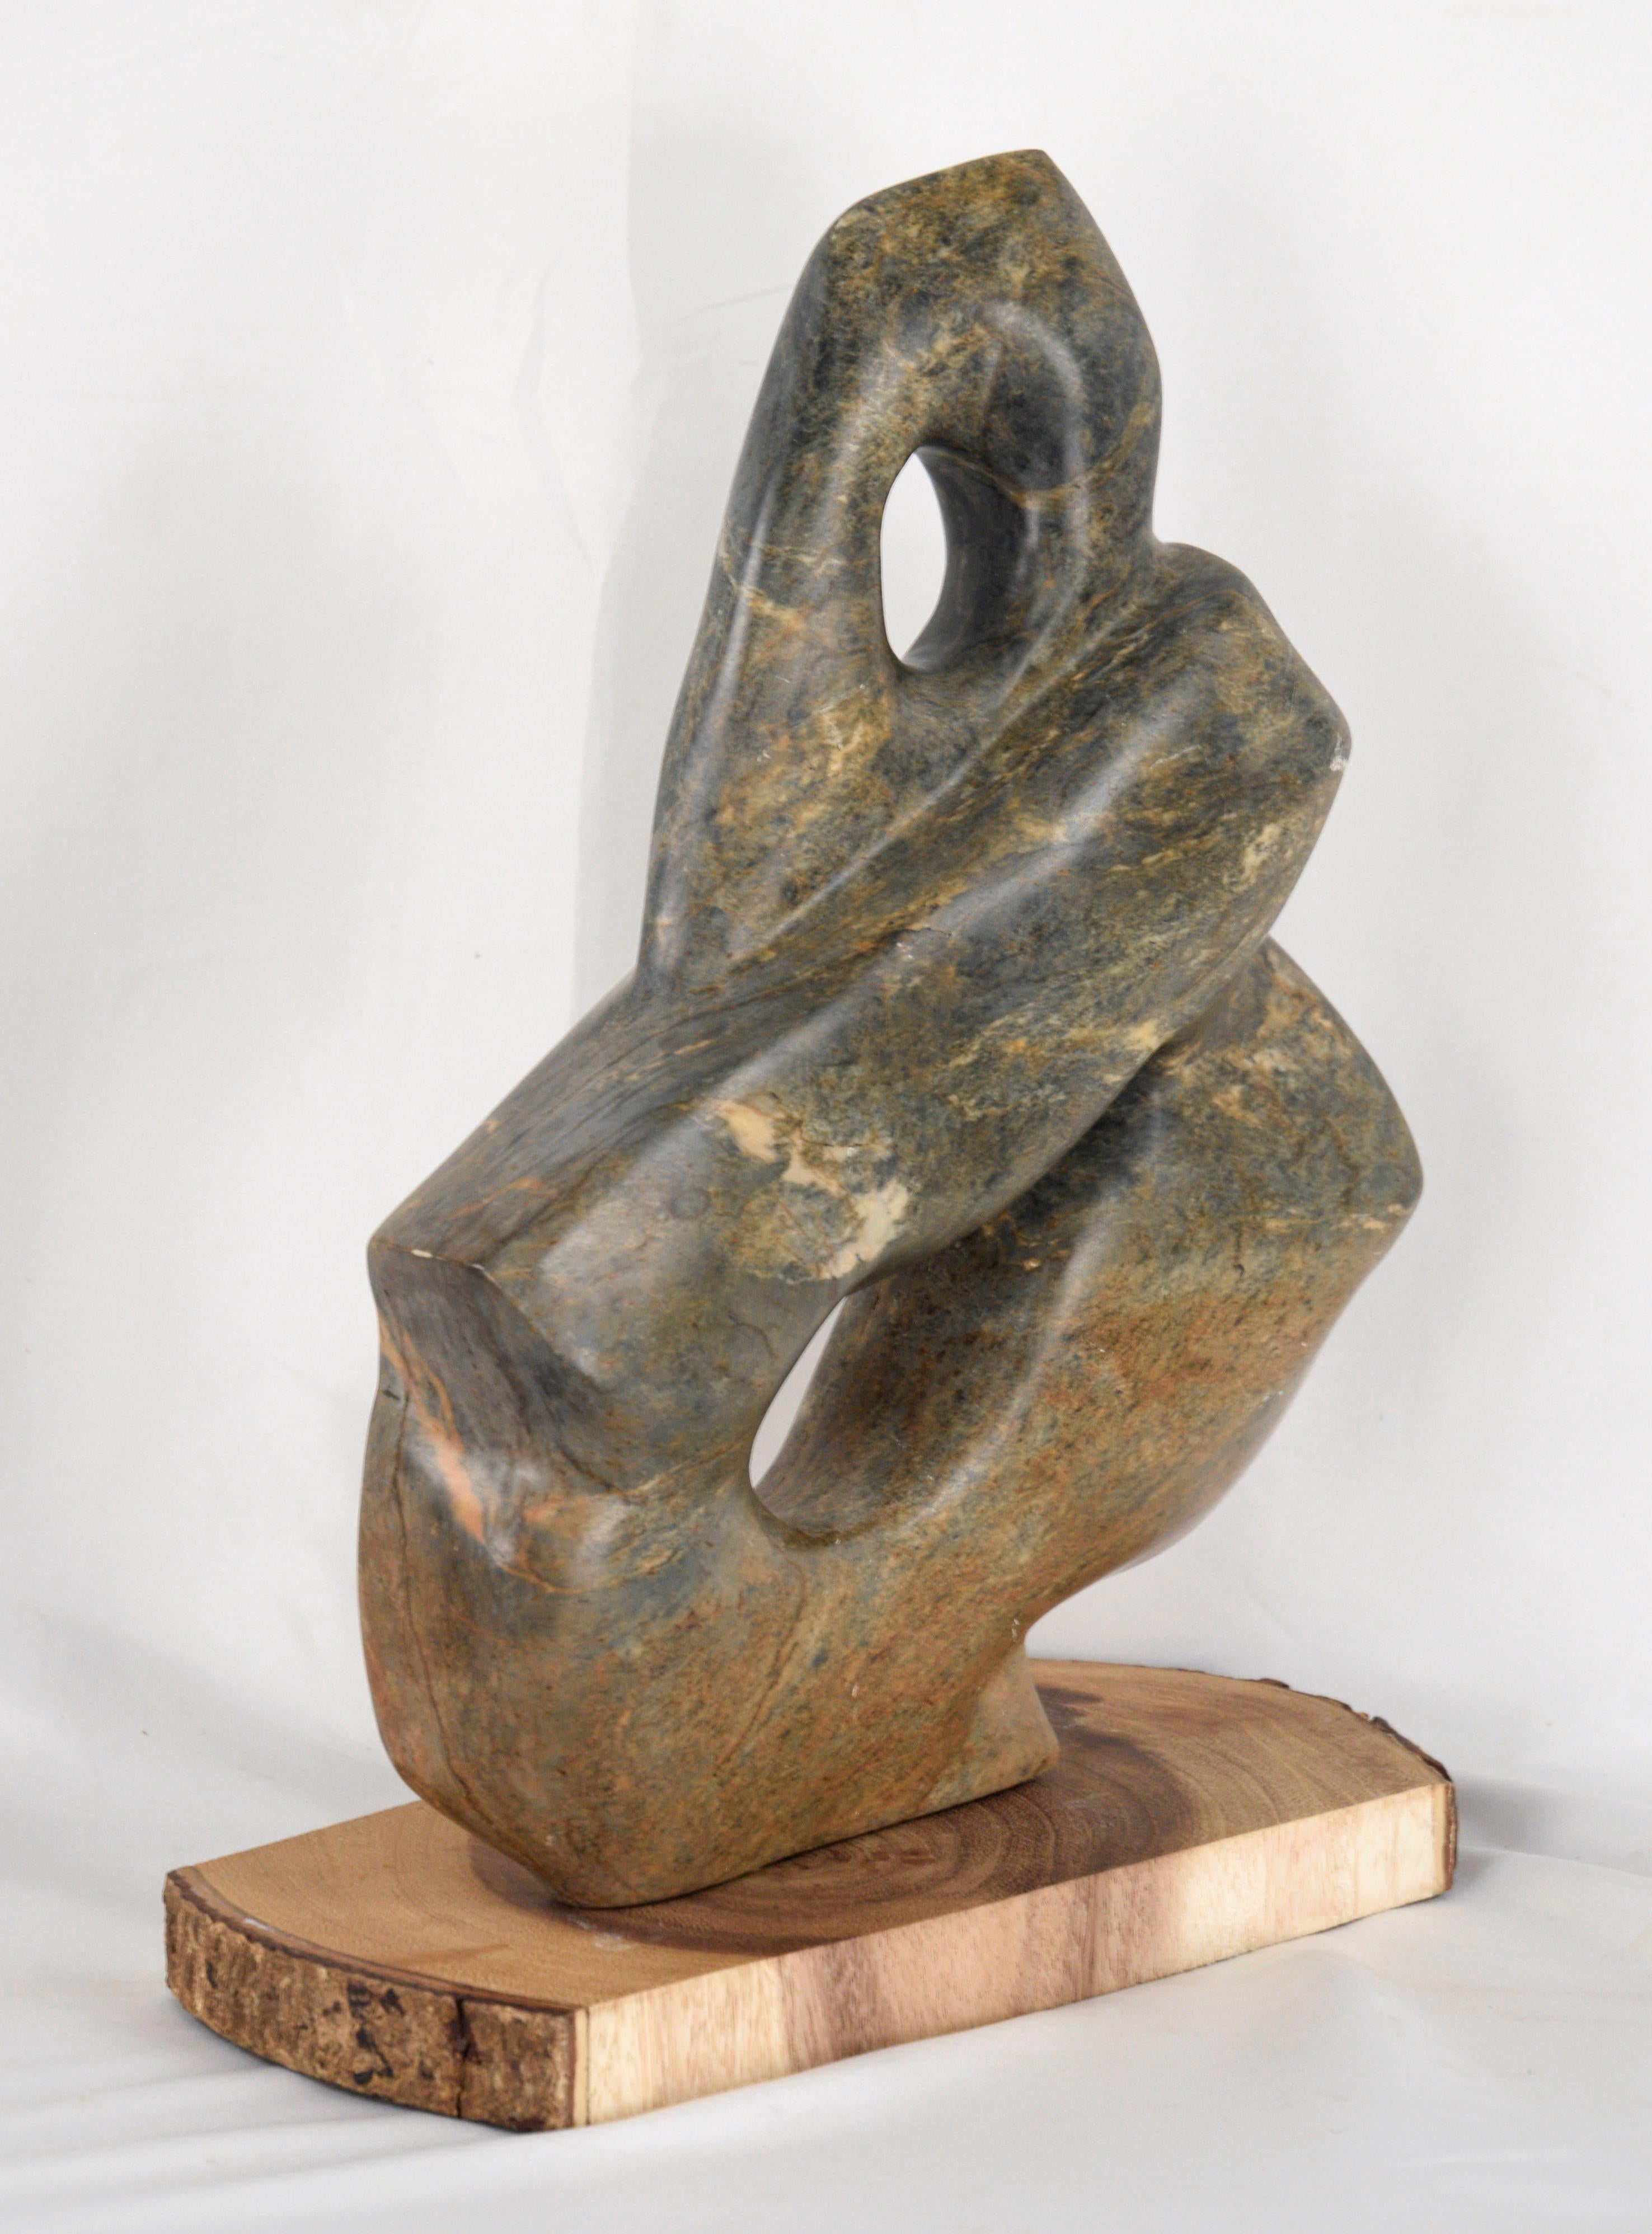 Sculpture abstraite organique de G. Krueger. La pierre Serpentine présente de magnifiques teintes vertes, jaunes et orange, sculptées dans une forme fluide dans le style des sculptures Herman Miller. 

Le socle en bois mesure 1 